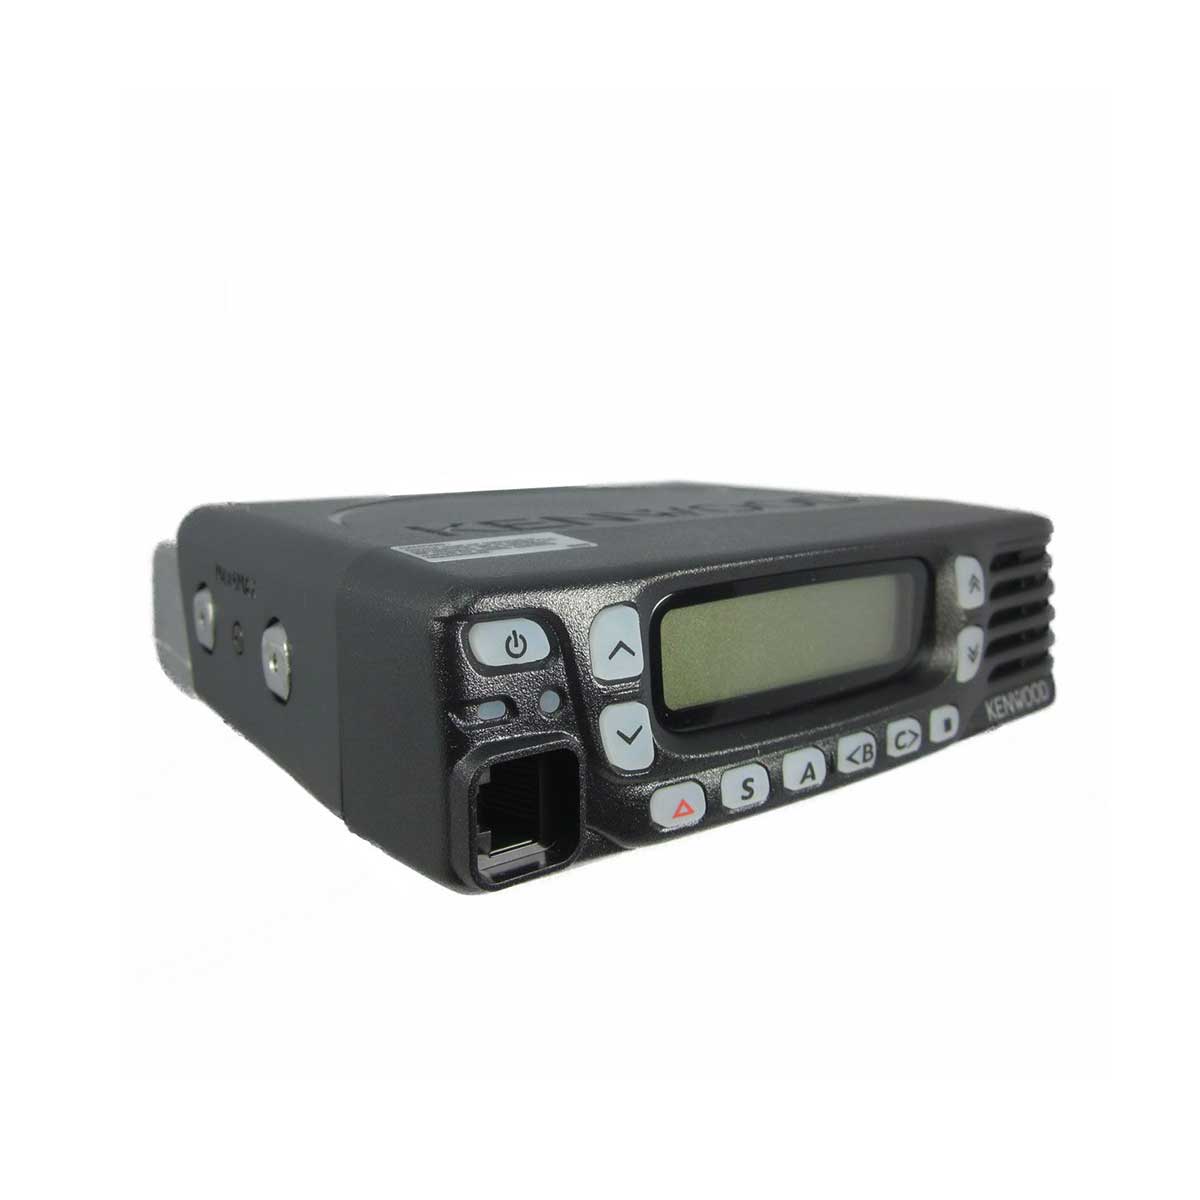 Radio Kenwood TK-8360 Analógico UHF 400-470 MHz